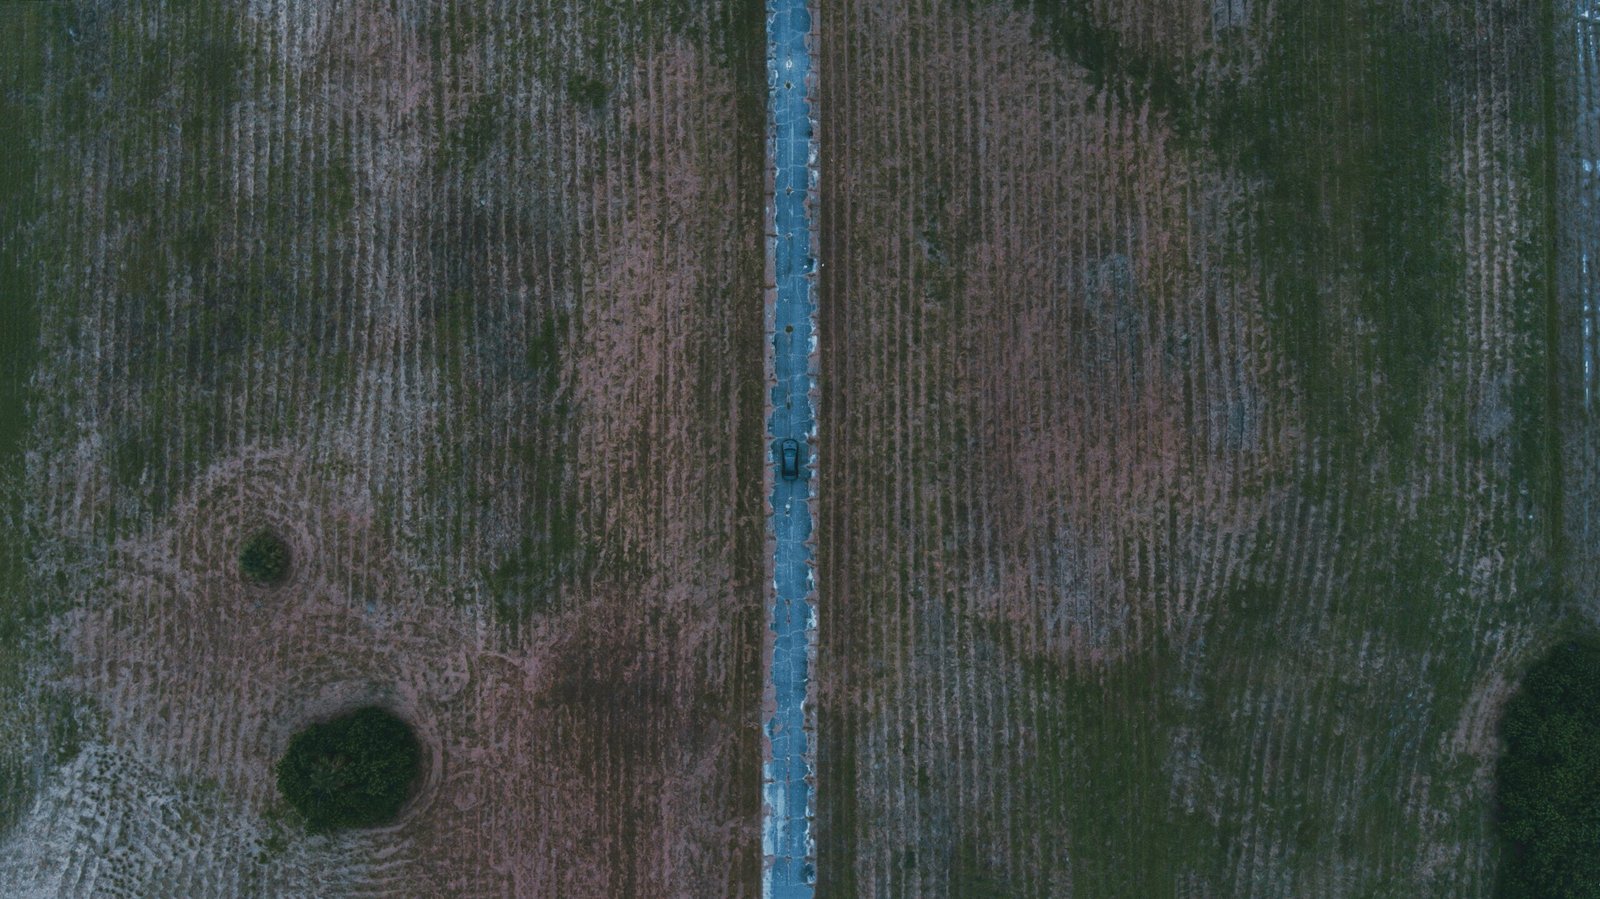 a bird's eye view of a field with a bird's eye view